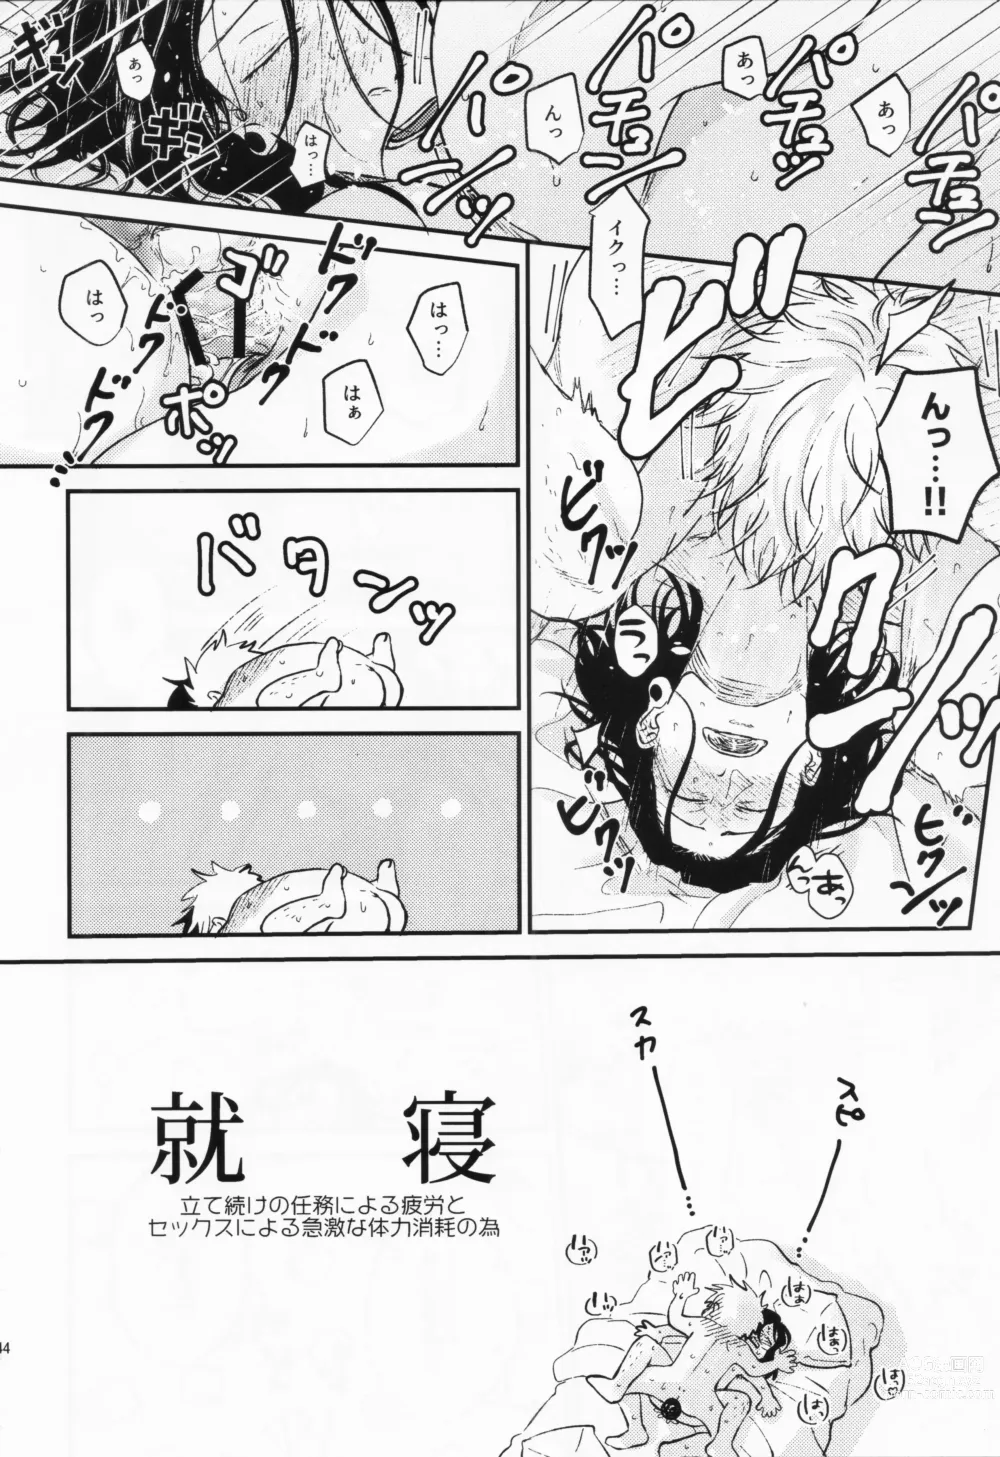 Page 41 of doujinshi Surussho.